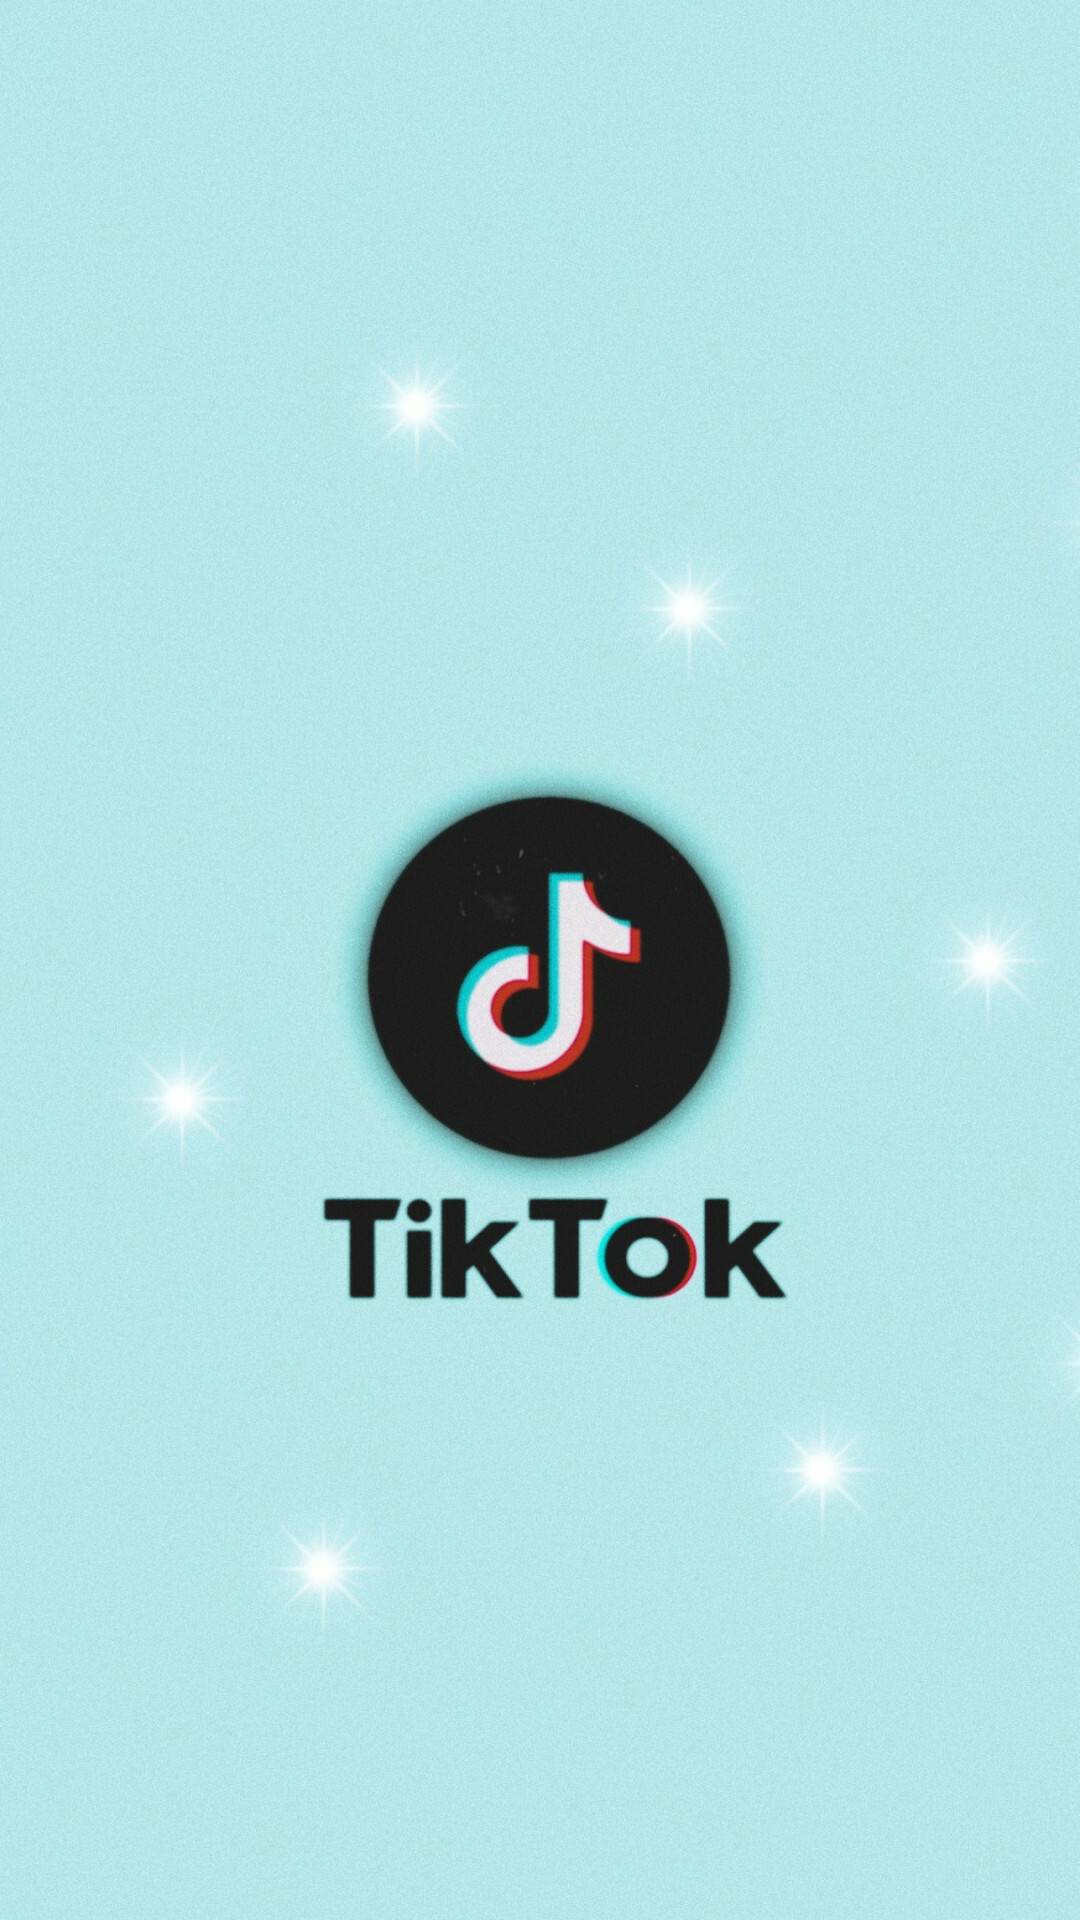 TikTok: A social media app, Short-form mobile videos. 1080x1920 Full HD Wallpaper.